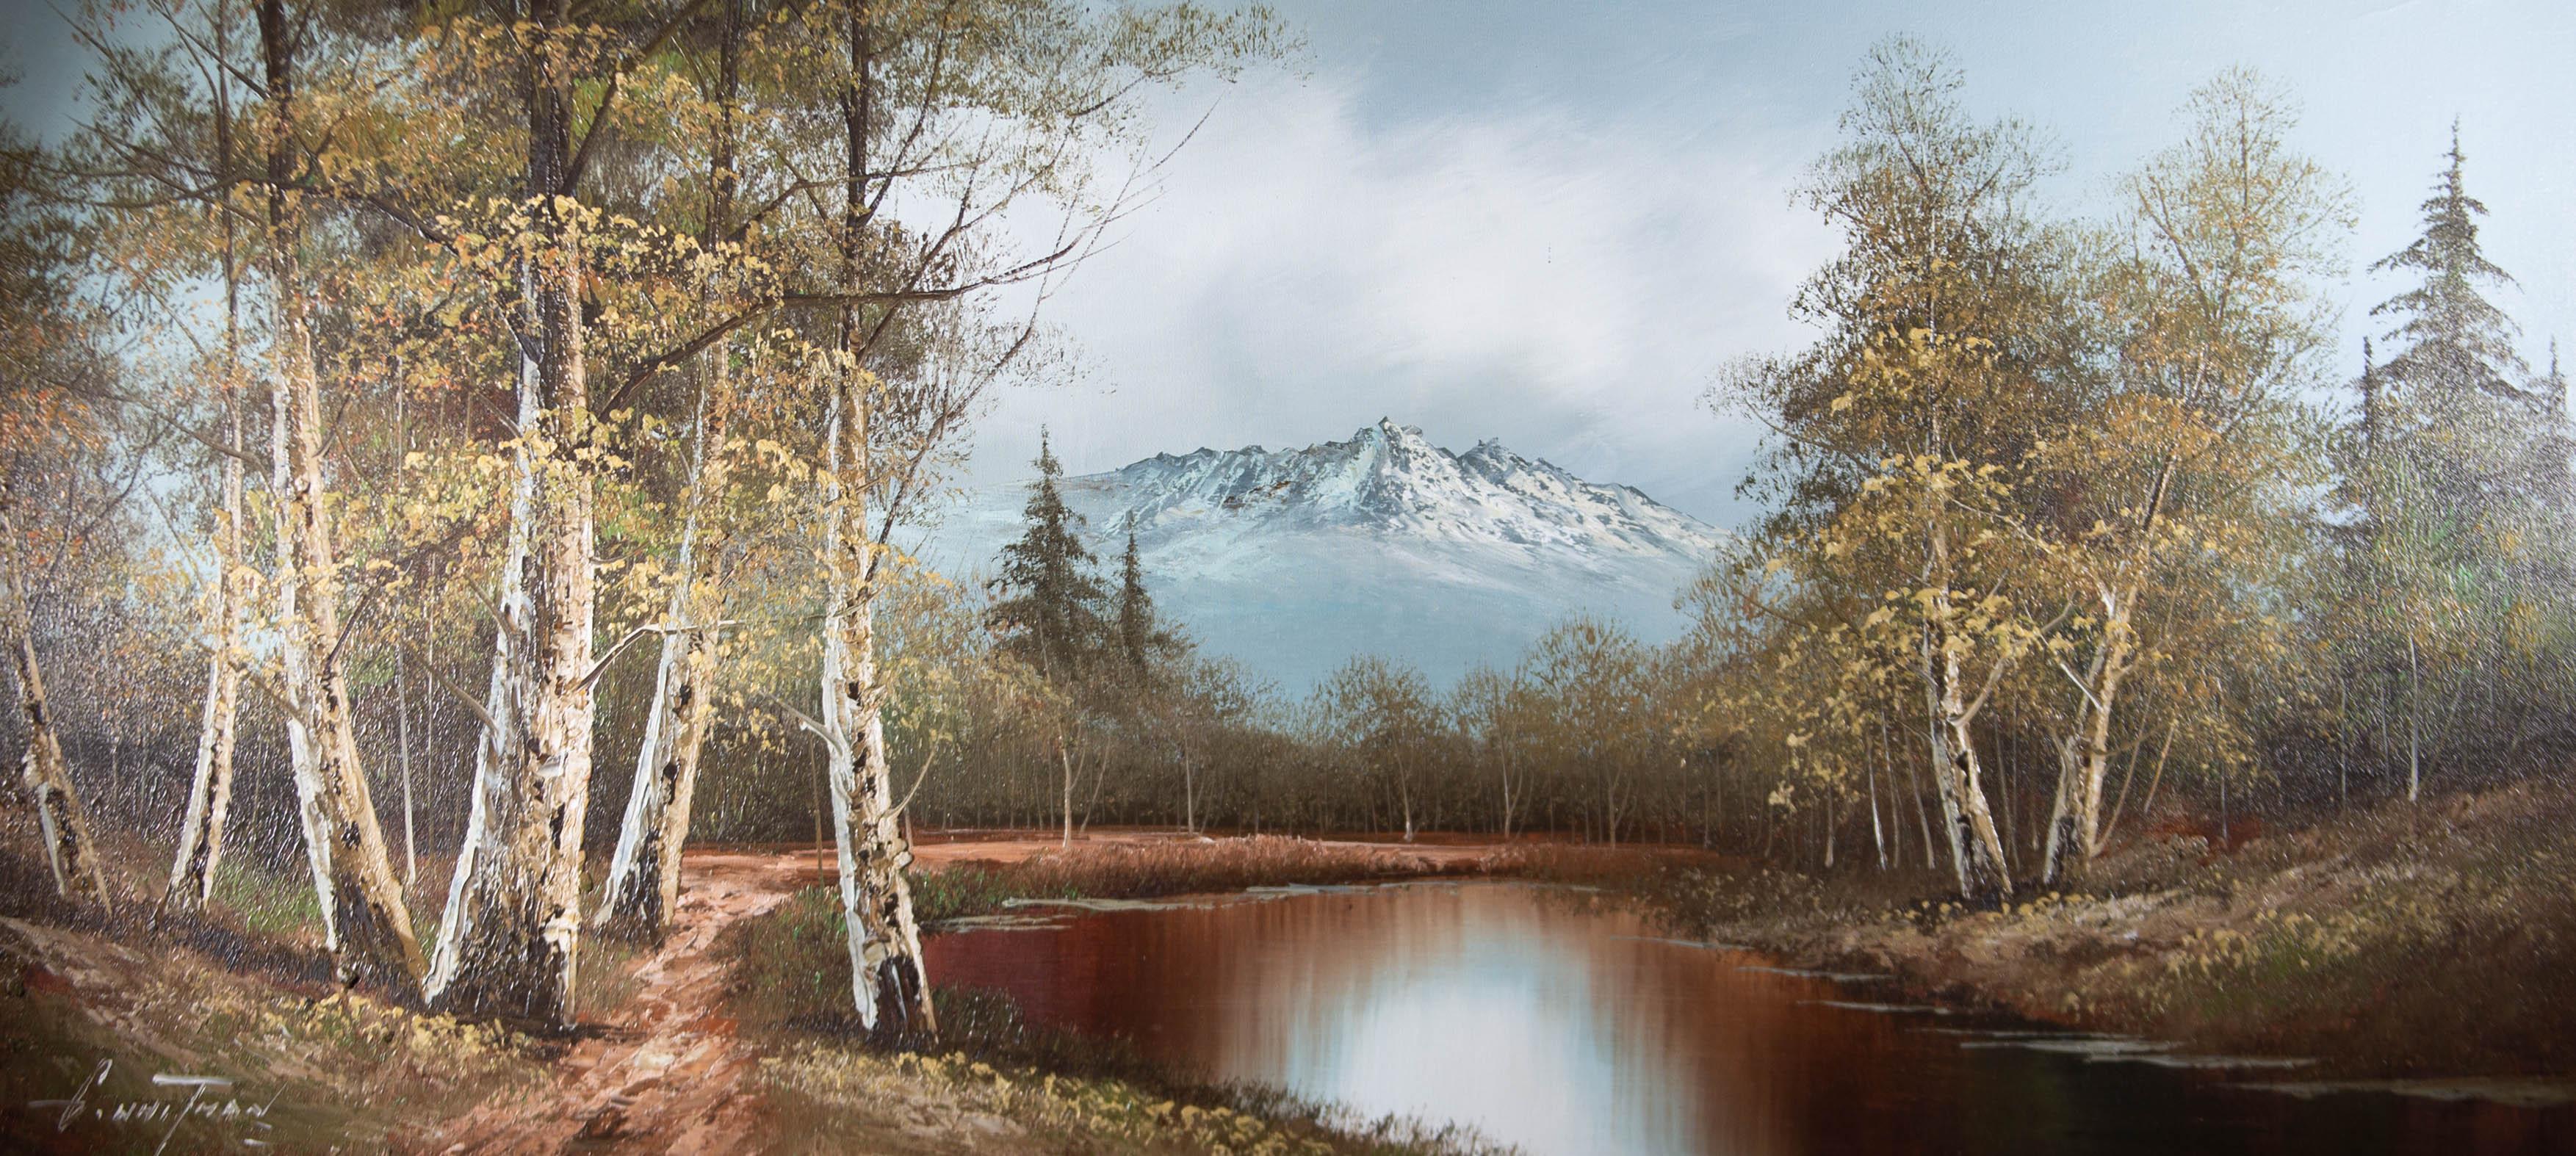 G. Whitman - Huile contemporaine, lac de montagne canadien 1